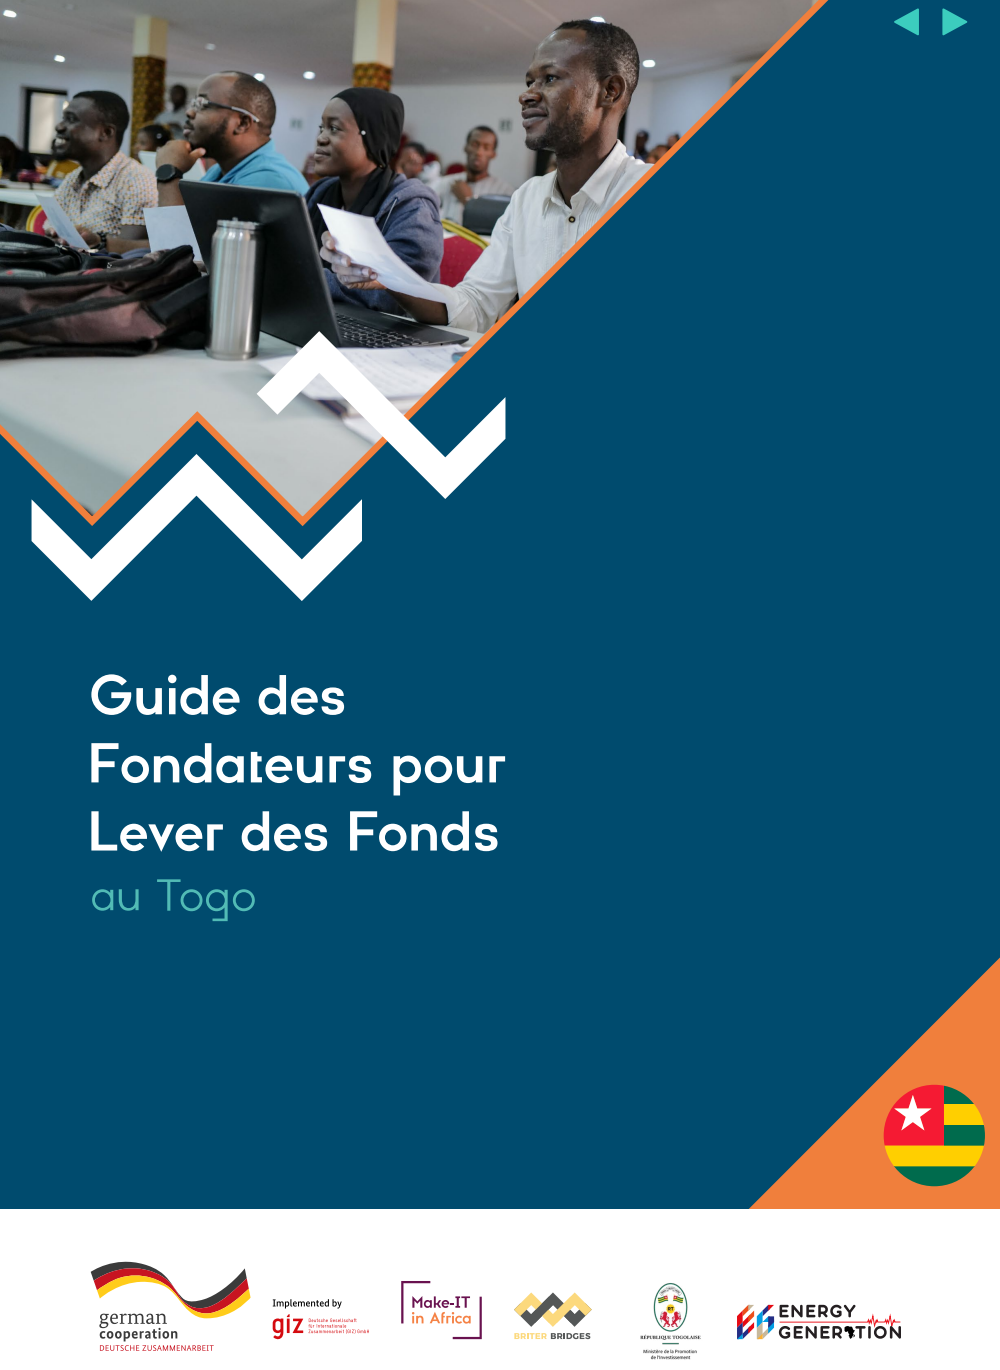 Energy Generation et la Giz lancent Le Guide des Fondateurs pour Lever des Fonds au Togo !